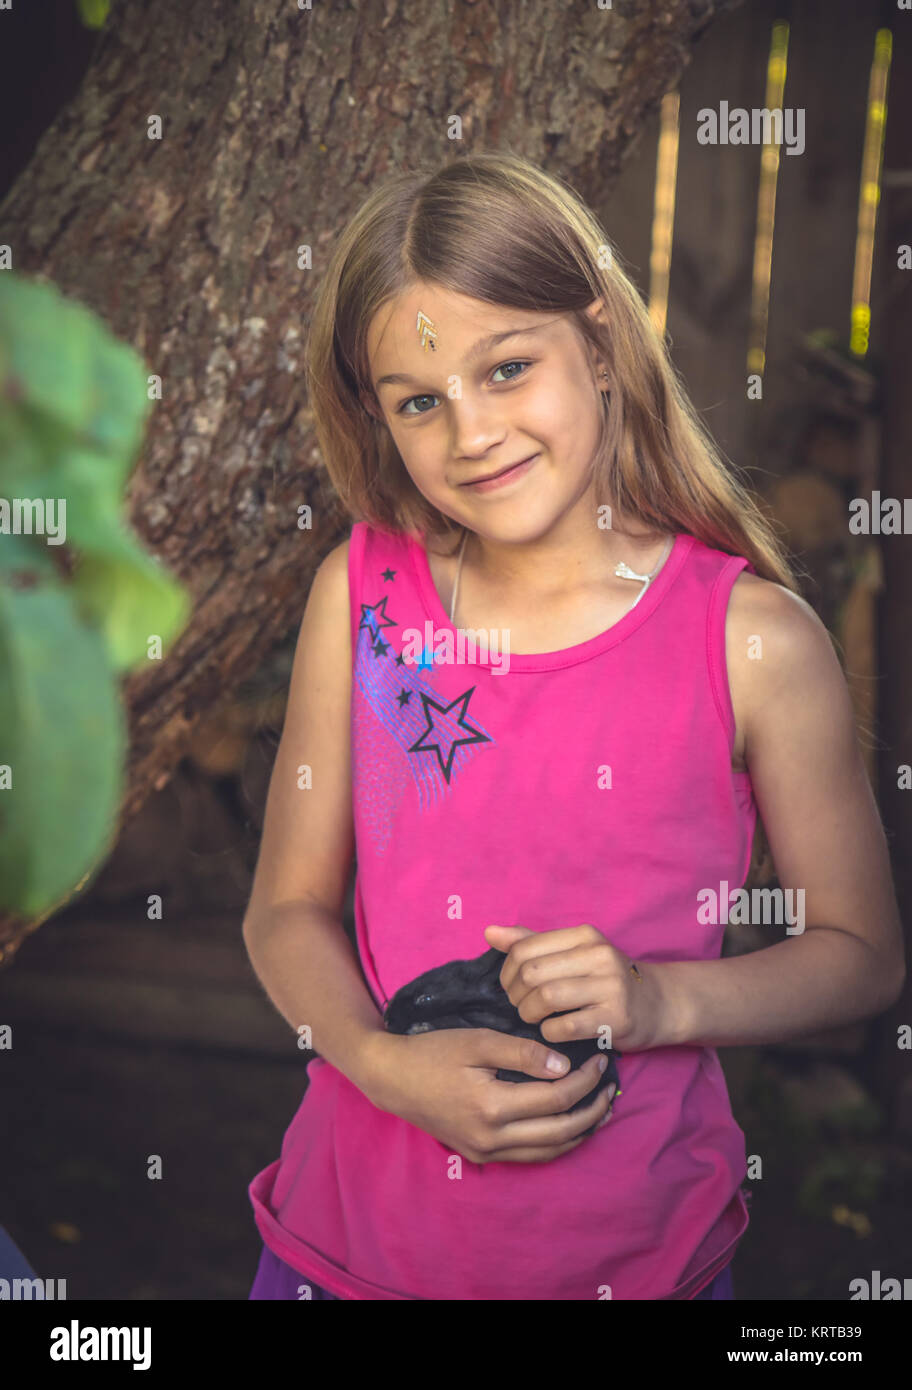 Bellissimo bambino sorridente ragazza carezza coniglio in campagna che simboleggiano cura degli animali Foto Stock